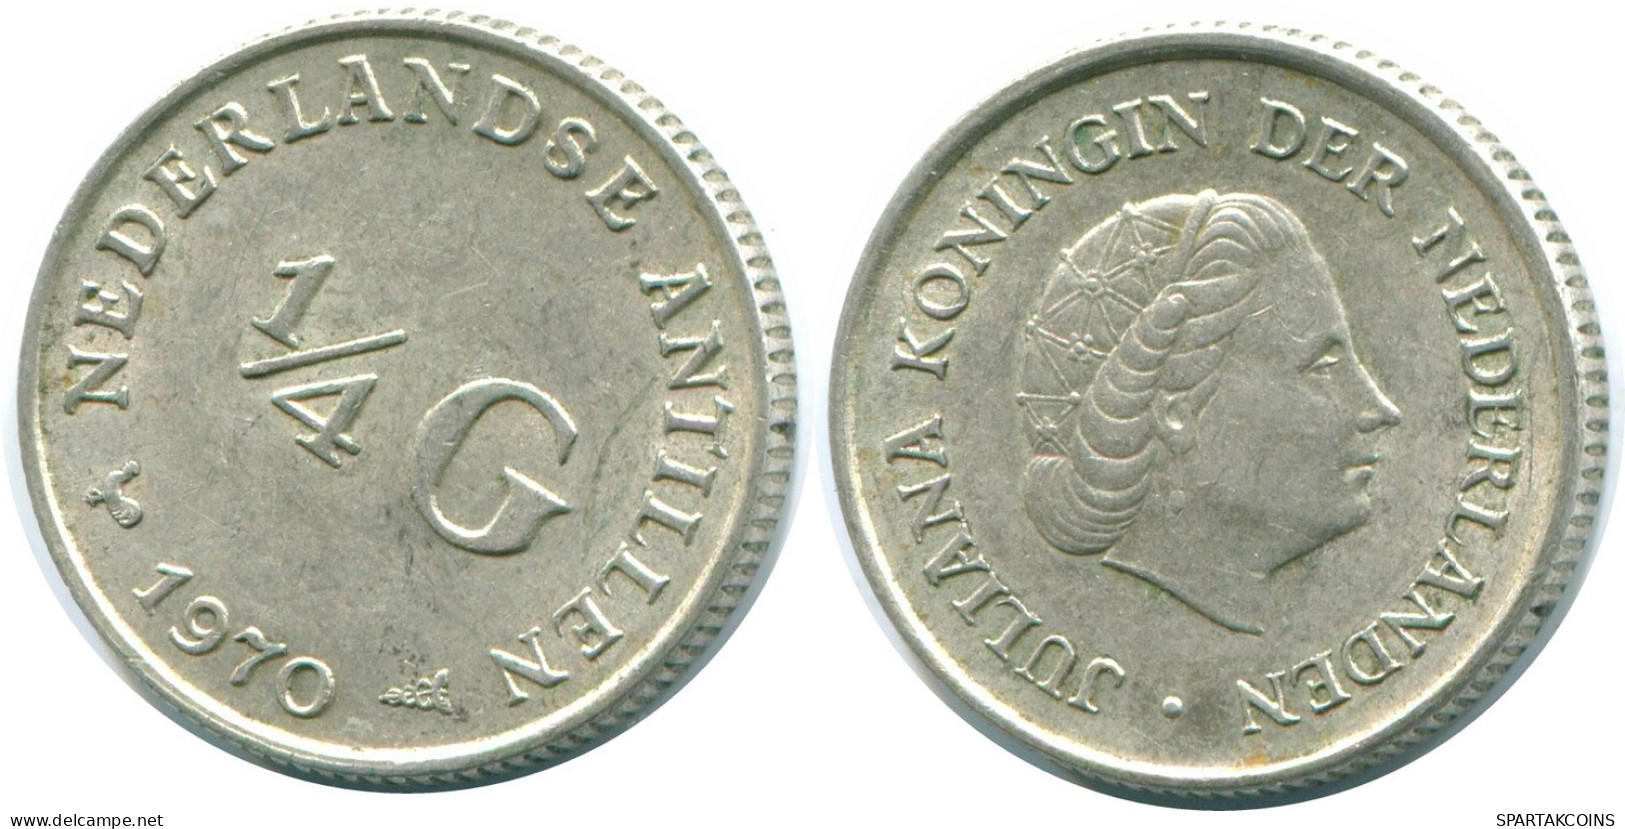 1/4 GULDEN 1970 NIEDERLÄNDISCHE ANTILLEN SILBER Koloniale Münze #NL11636.4.D.A - Antille Olandesi